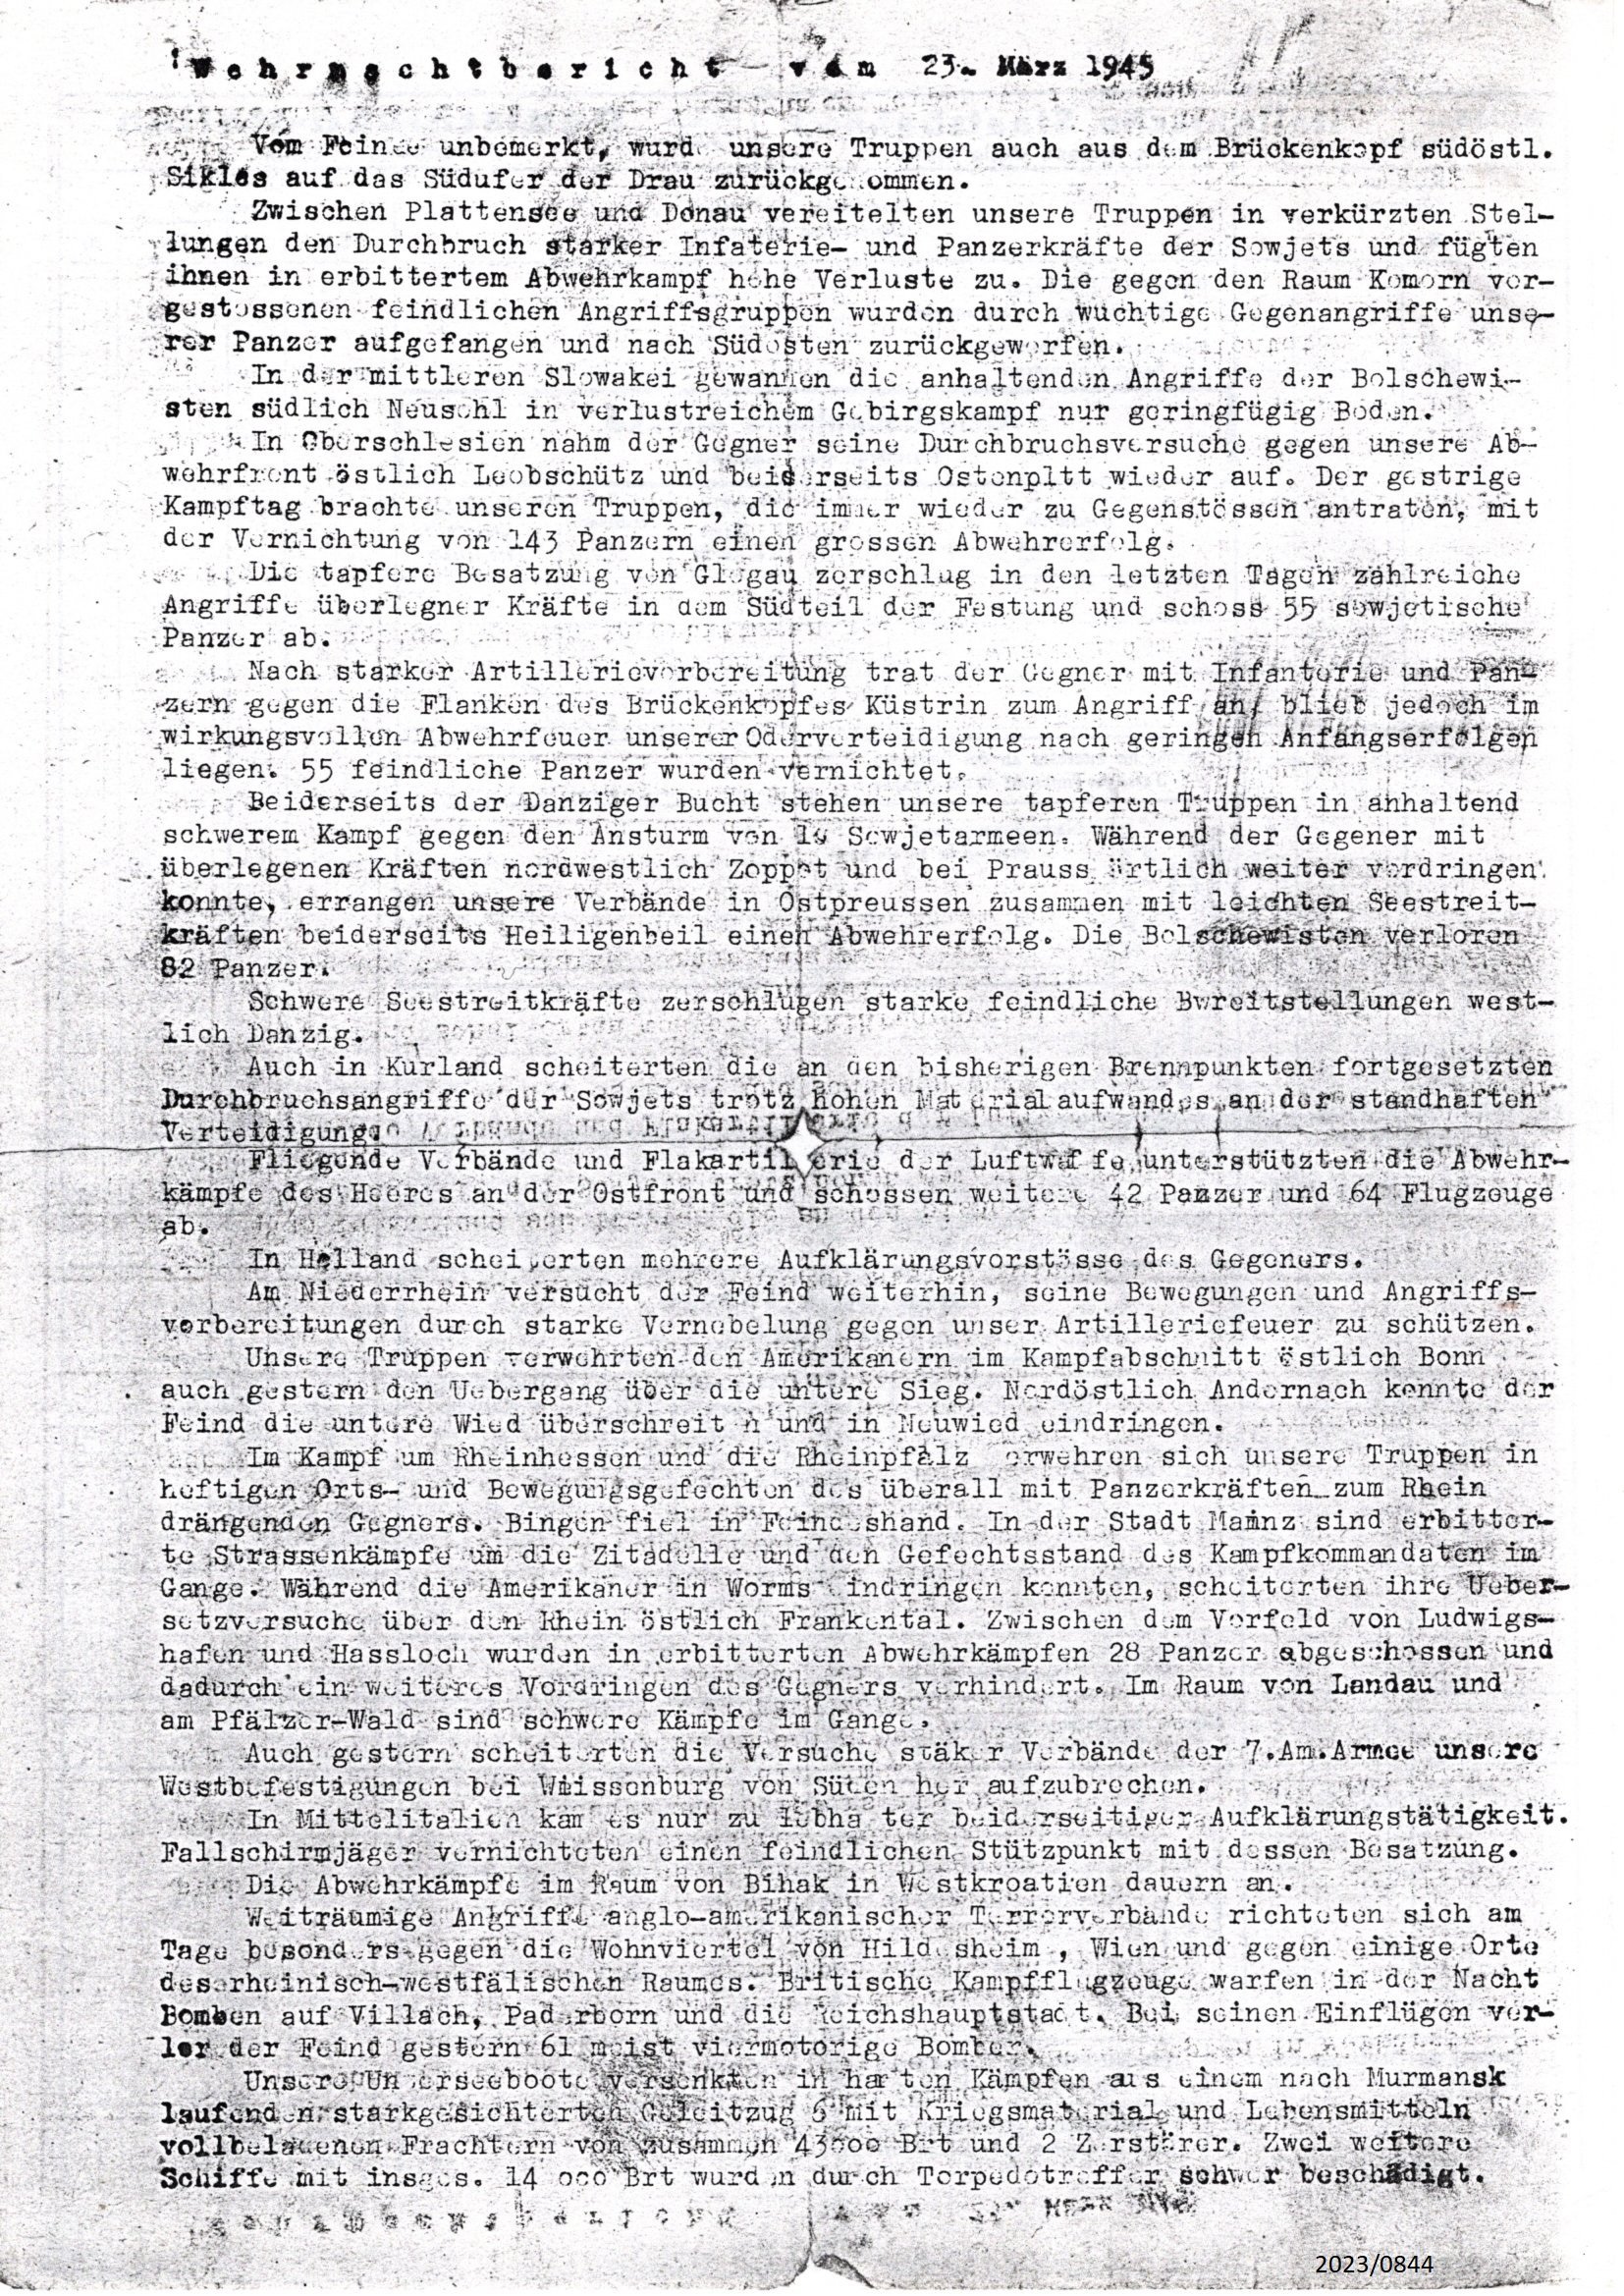 Fotokopie: Wehrmachtsbericht vom 23. März 1945 (Stadtmuseum Bad Dürkheim im Kulturzentrum Haus Catoir CC BY-NC-SA)